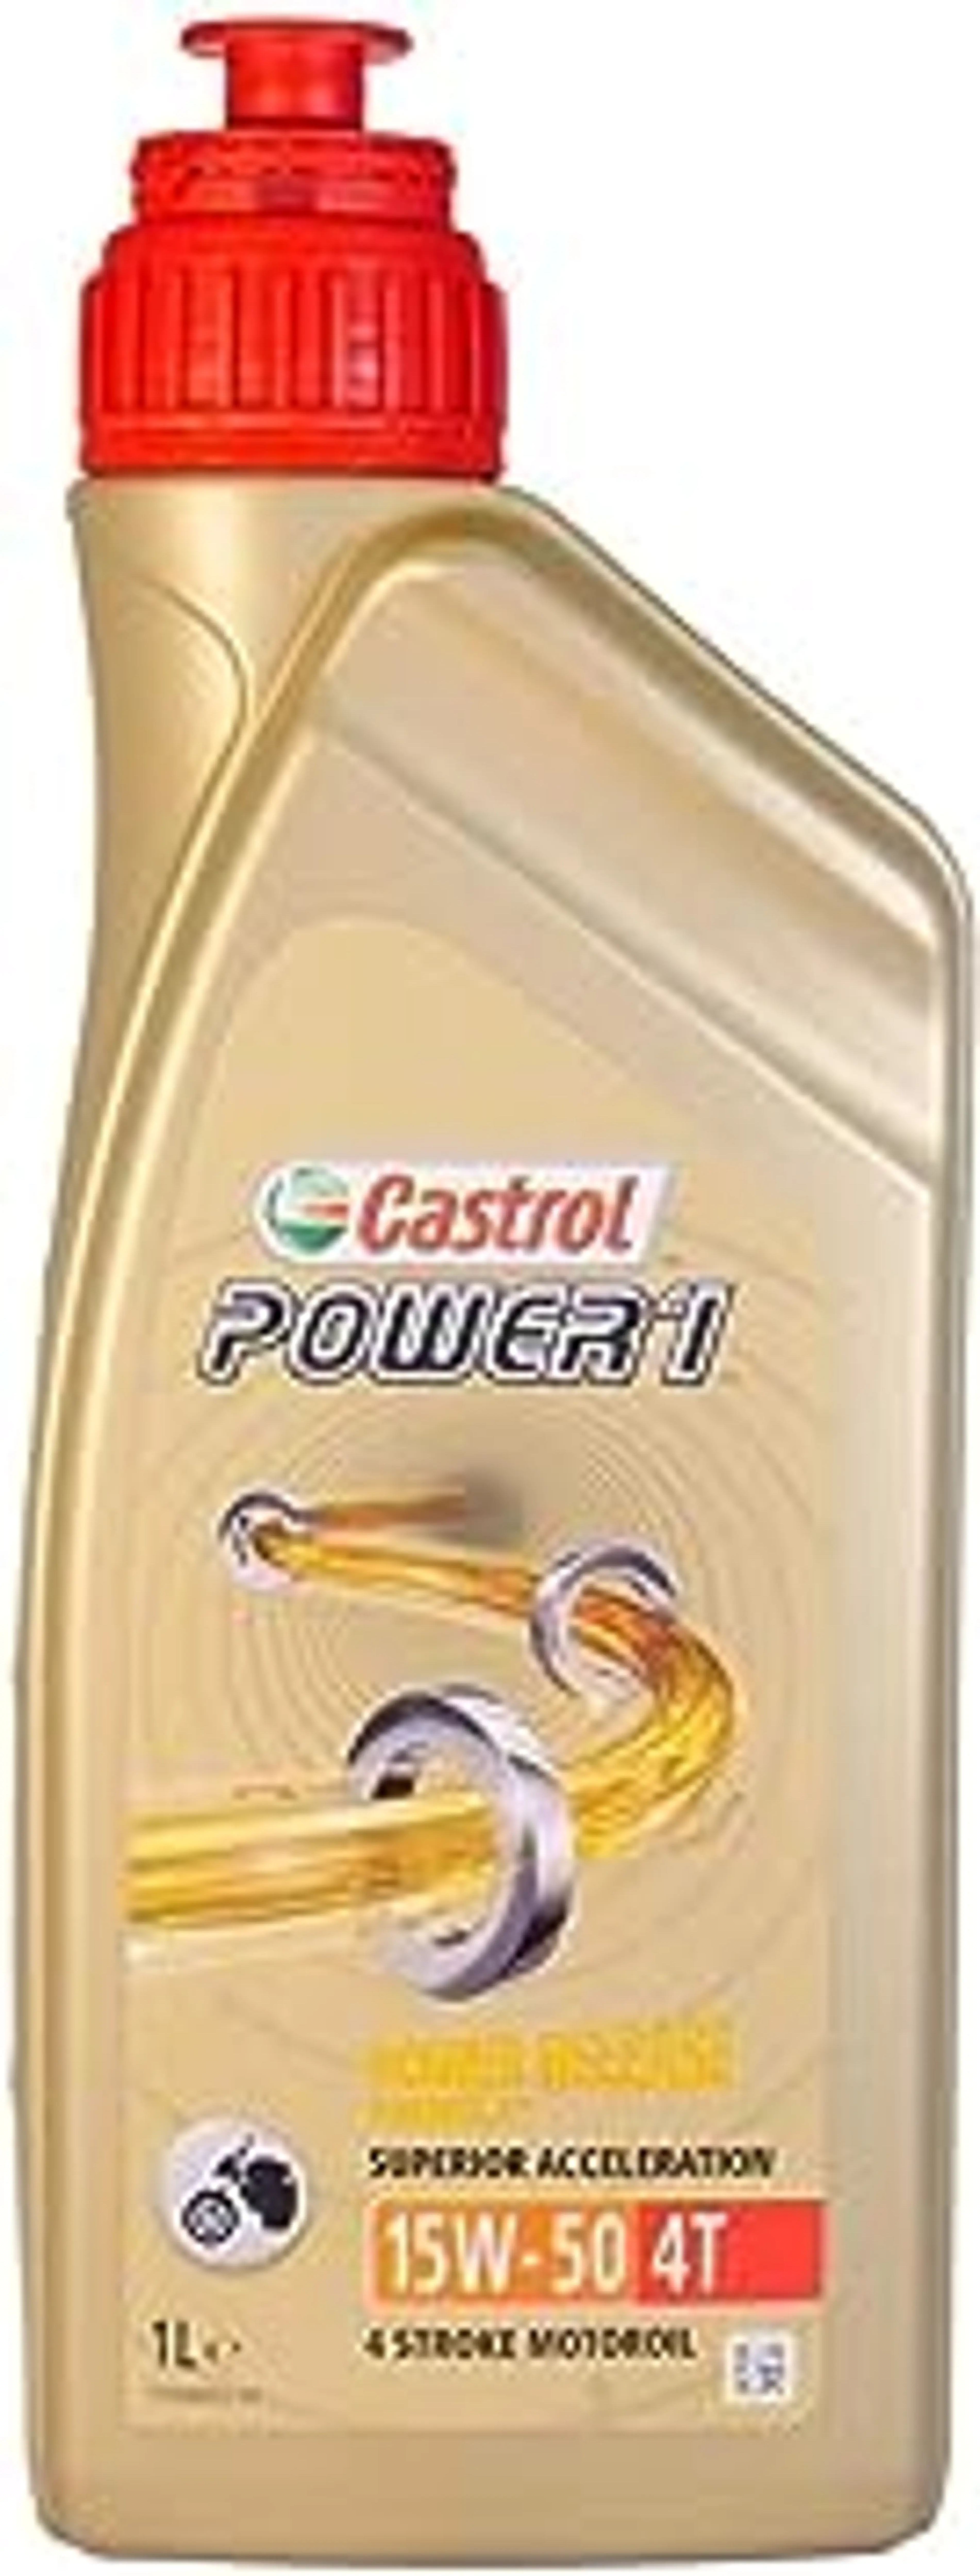 CASTROL 15W50 4T POWER 1 1L